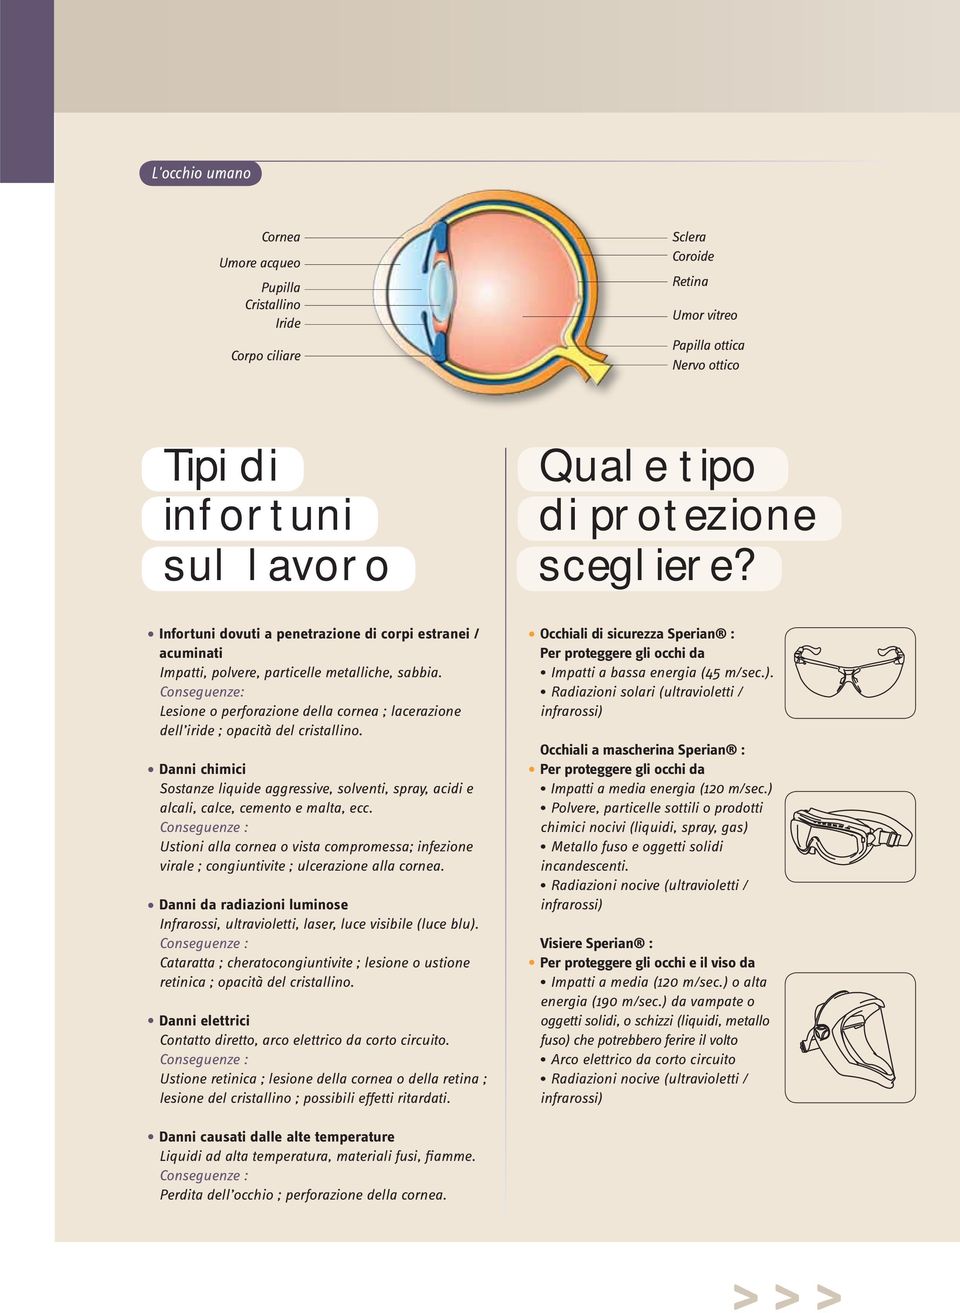 Conseguenze: Lesione o perforazione della cornea ; lacerazione dell iride ; opacità del cristallino.